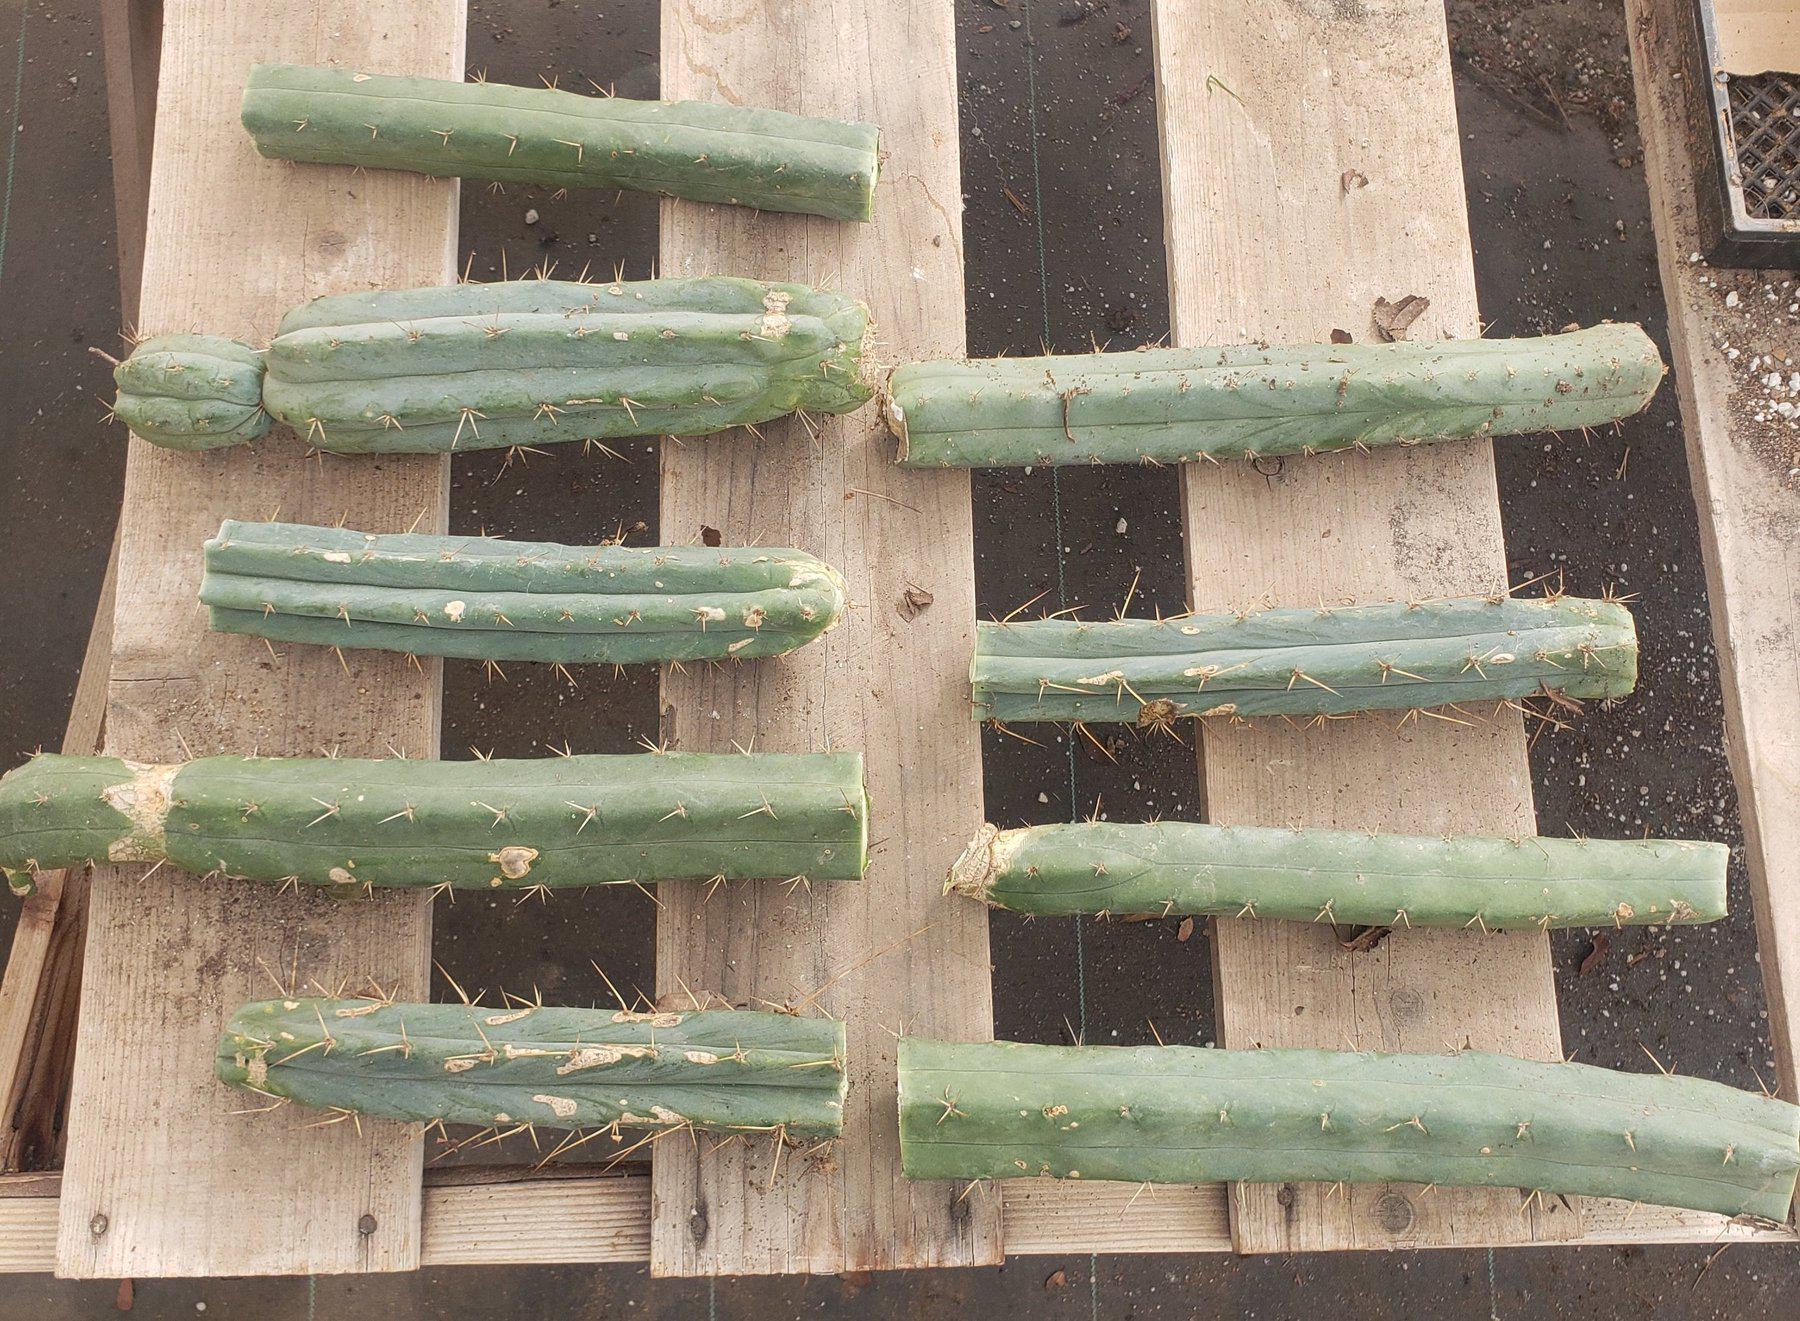 #EC26 EXACT Trichocereus Bridgesii Jiimz Cactus CUTTING 12"-Cactus - Large - Exact-The Succulent Source